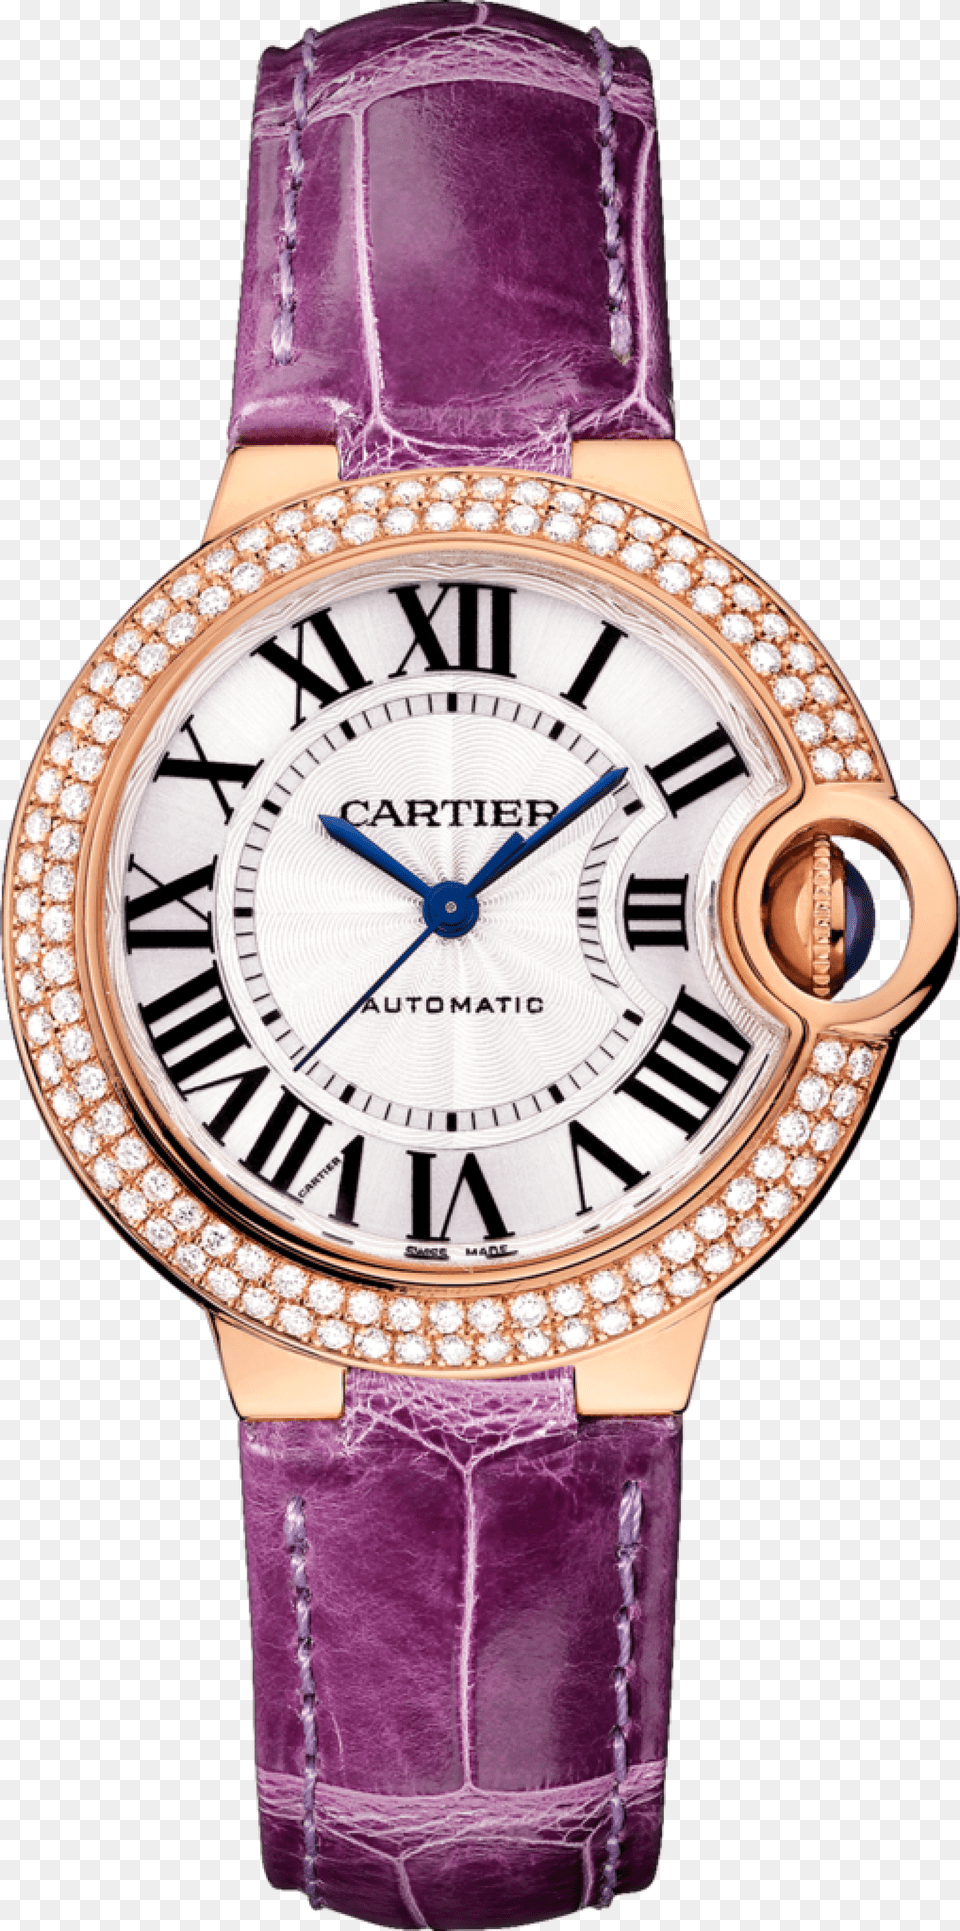 Cartier Ballon Bleu De Cartier Rose Gold Watch Watches, Arm, Body Part, Person, Wristwatch Png Image